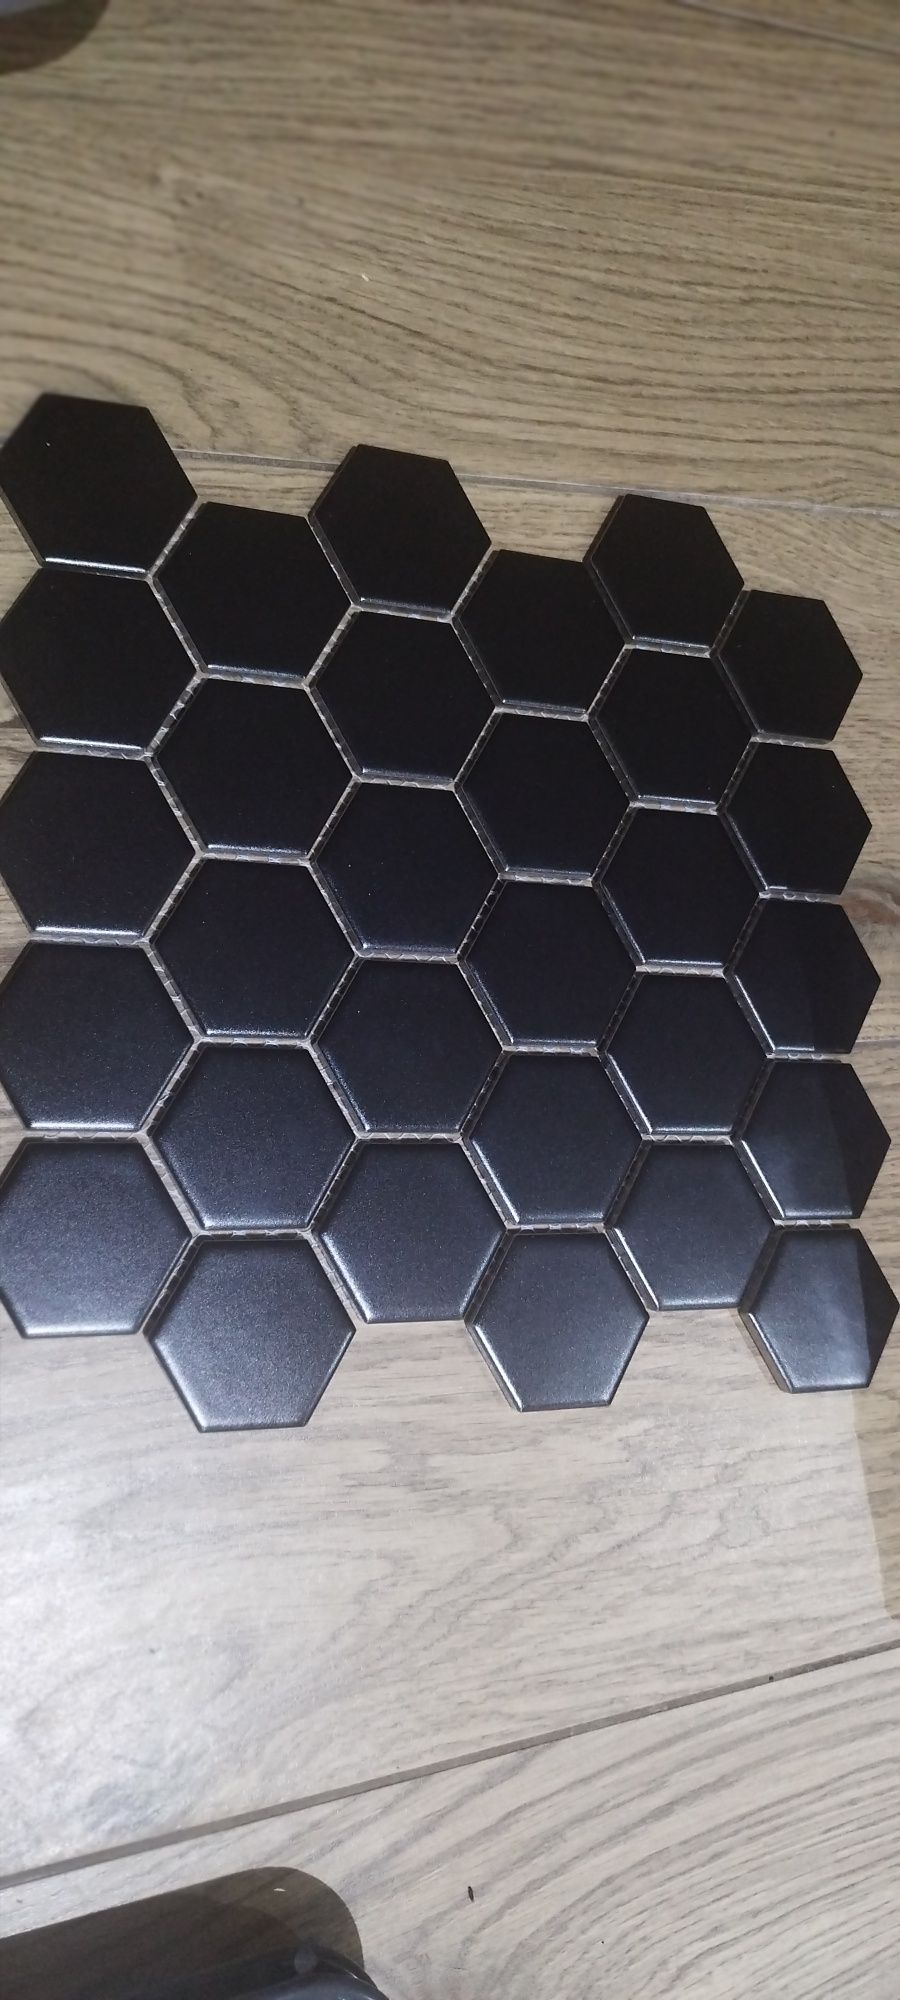 Czarne płytki ceramiczne w kształcie heksagonu